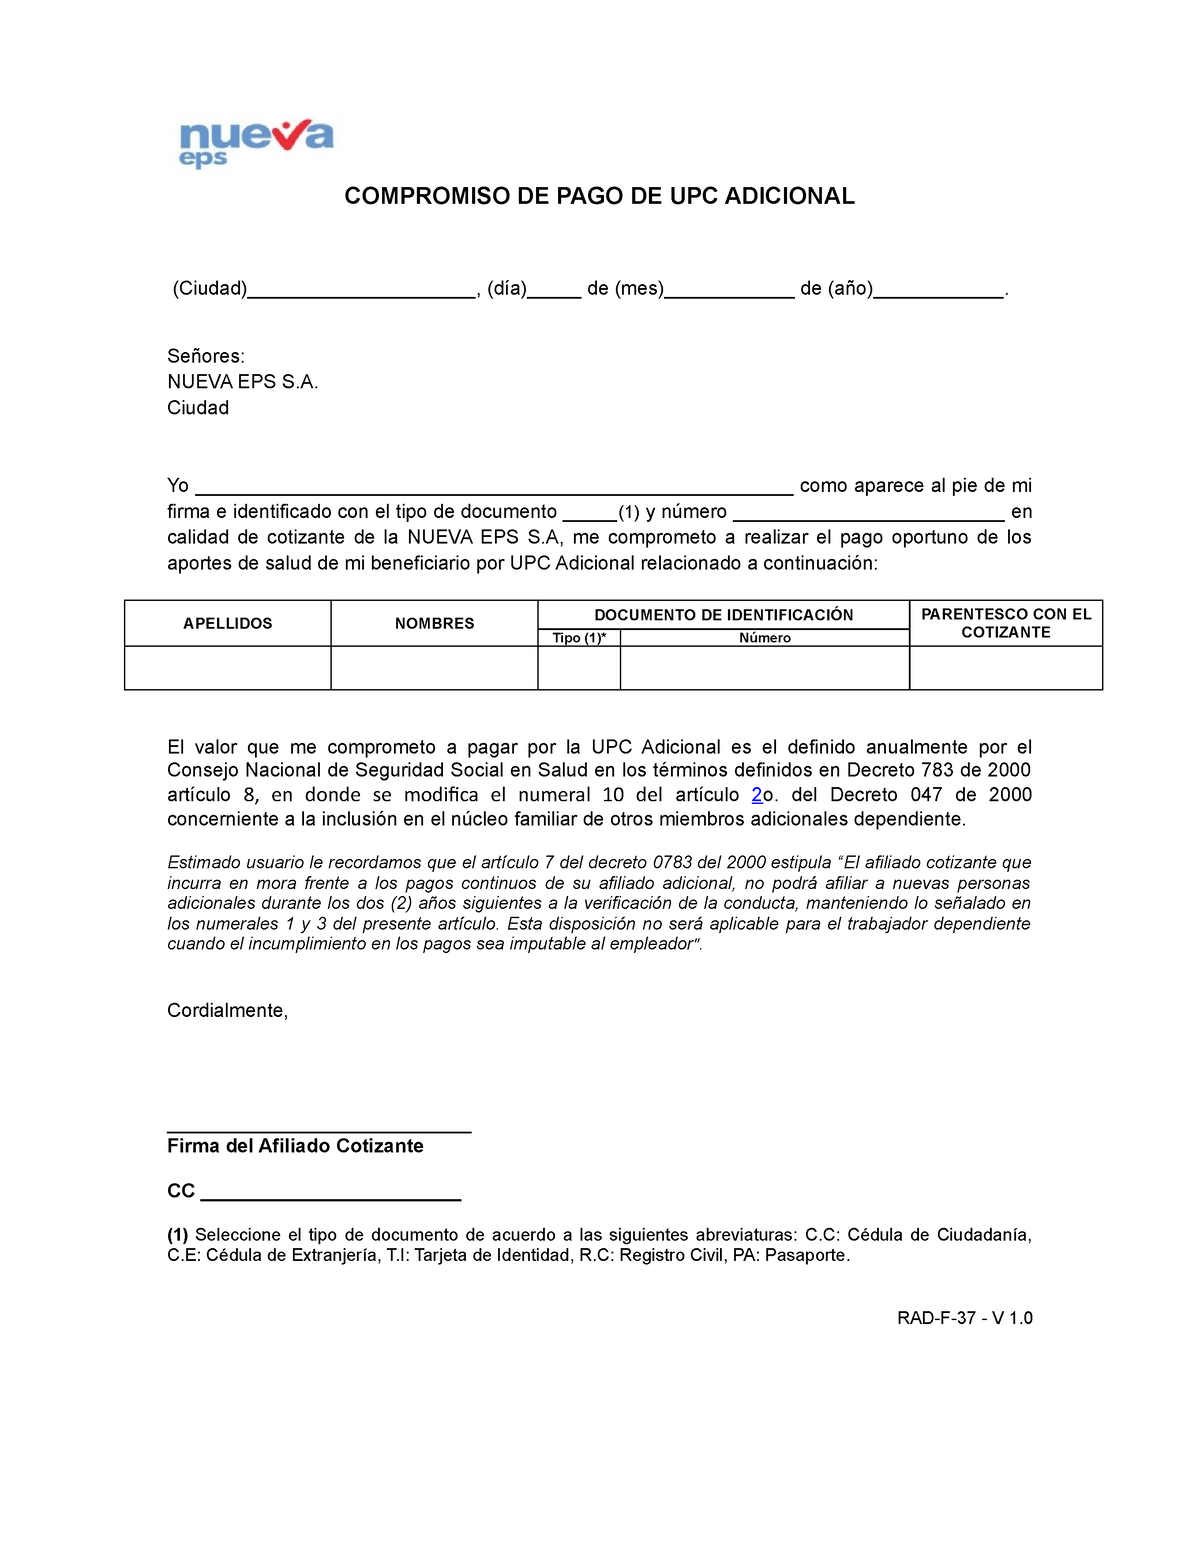 Formato compromiso de pago UPC adicional - COMPROMISO DE PAGO DE UPC  ADICIONAL (Ciudad), (día) de - Studocu